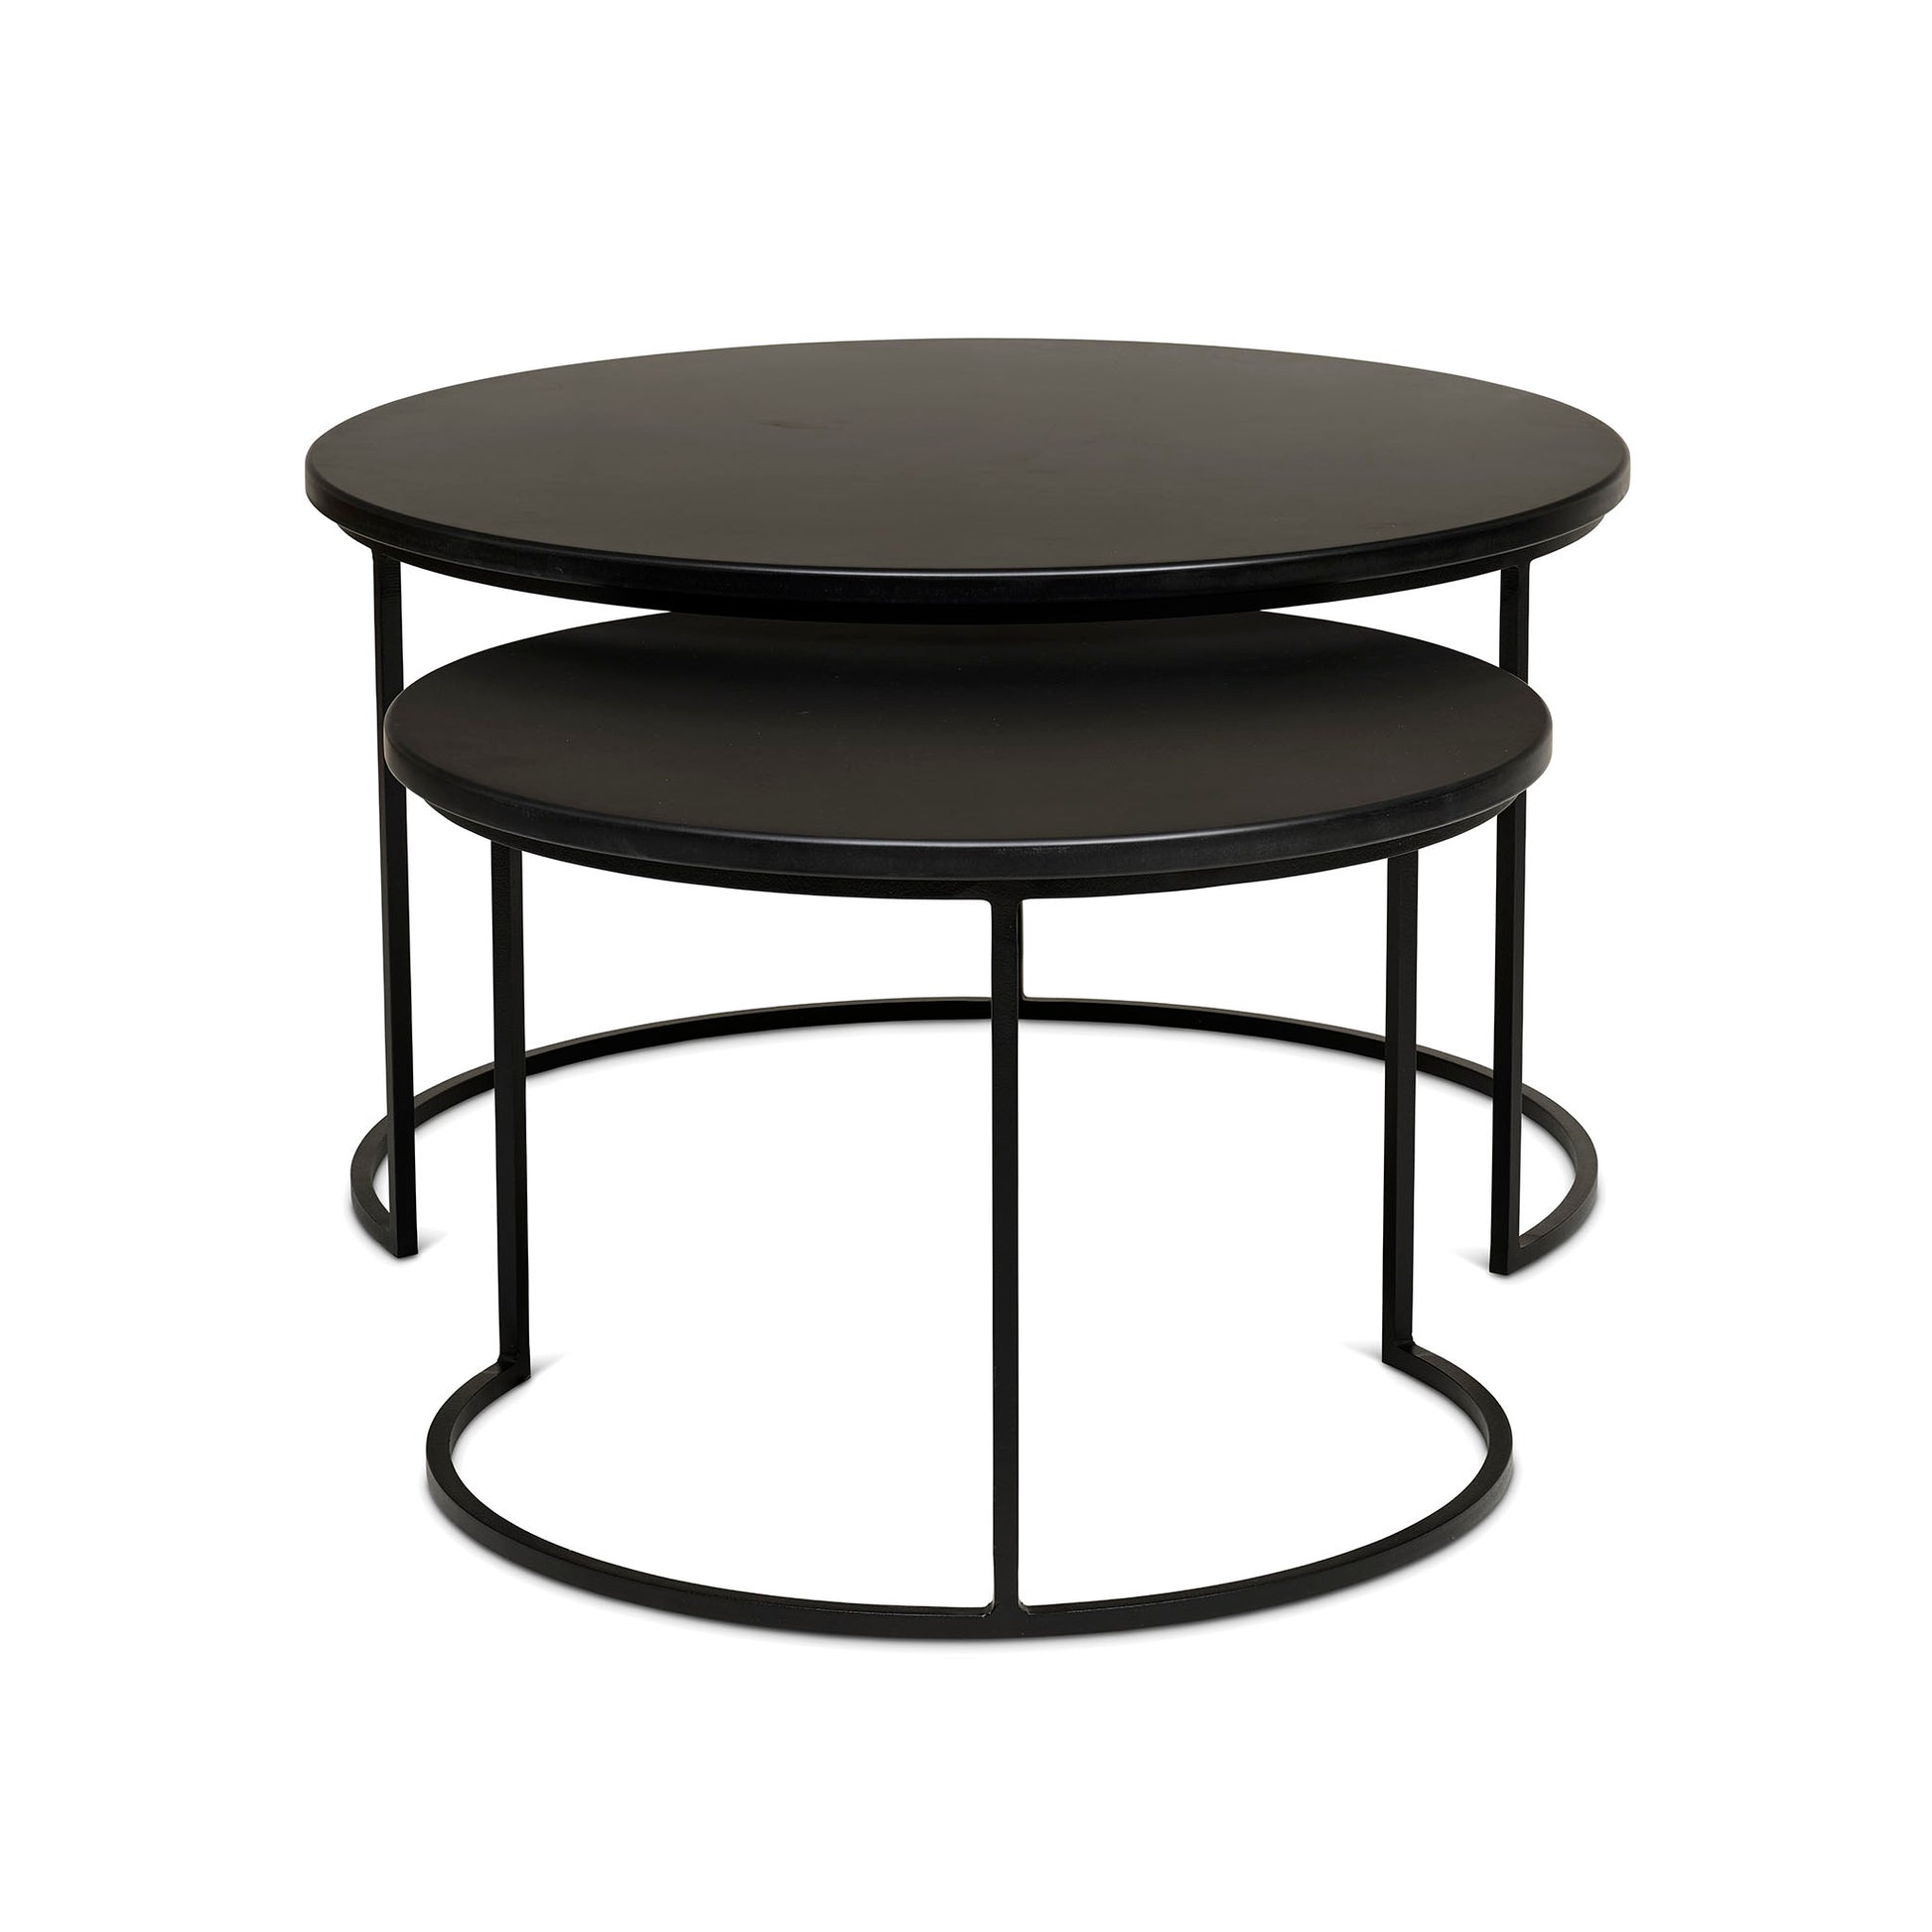 Soffbord i två delar i svart färg